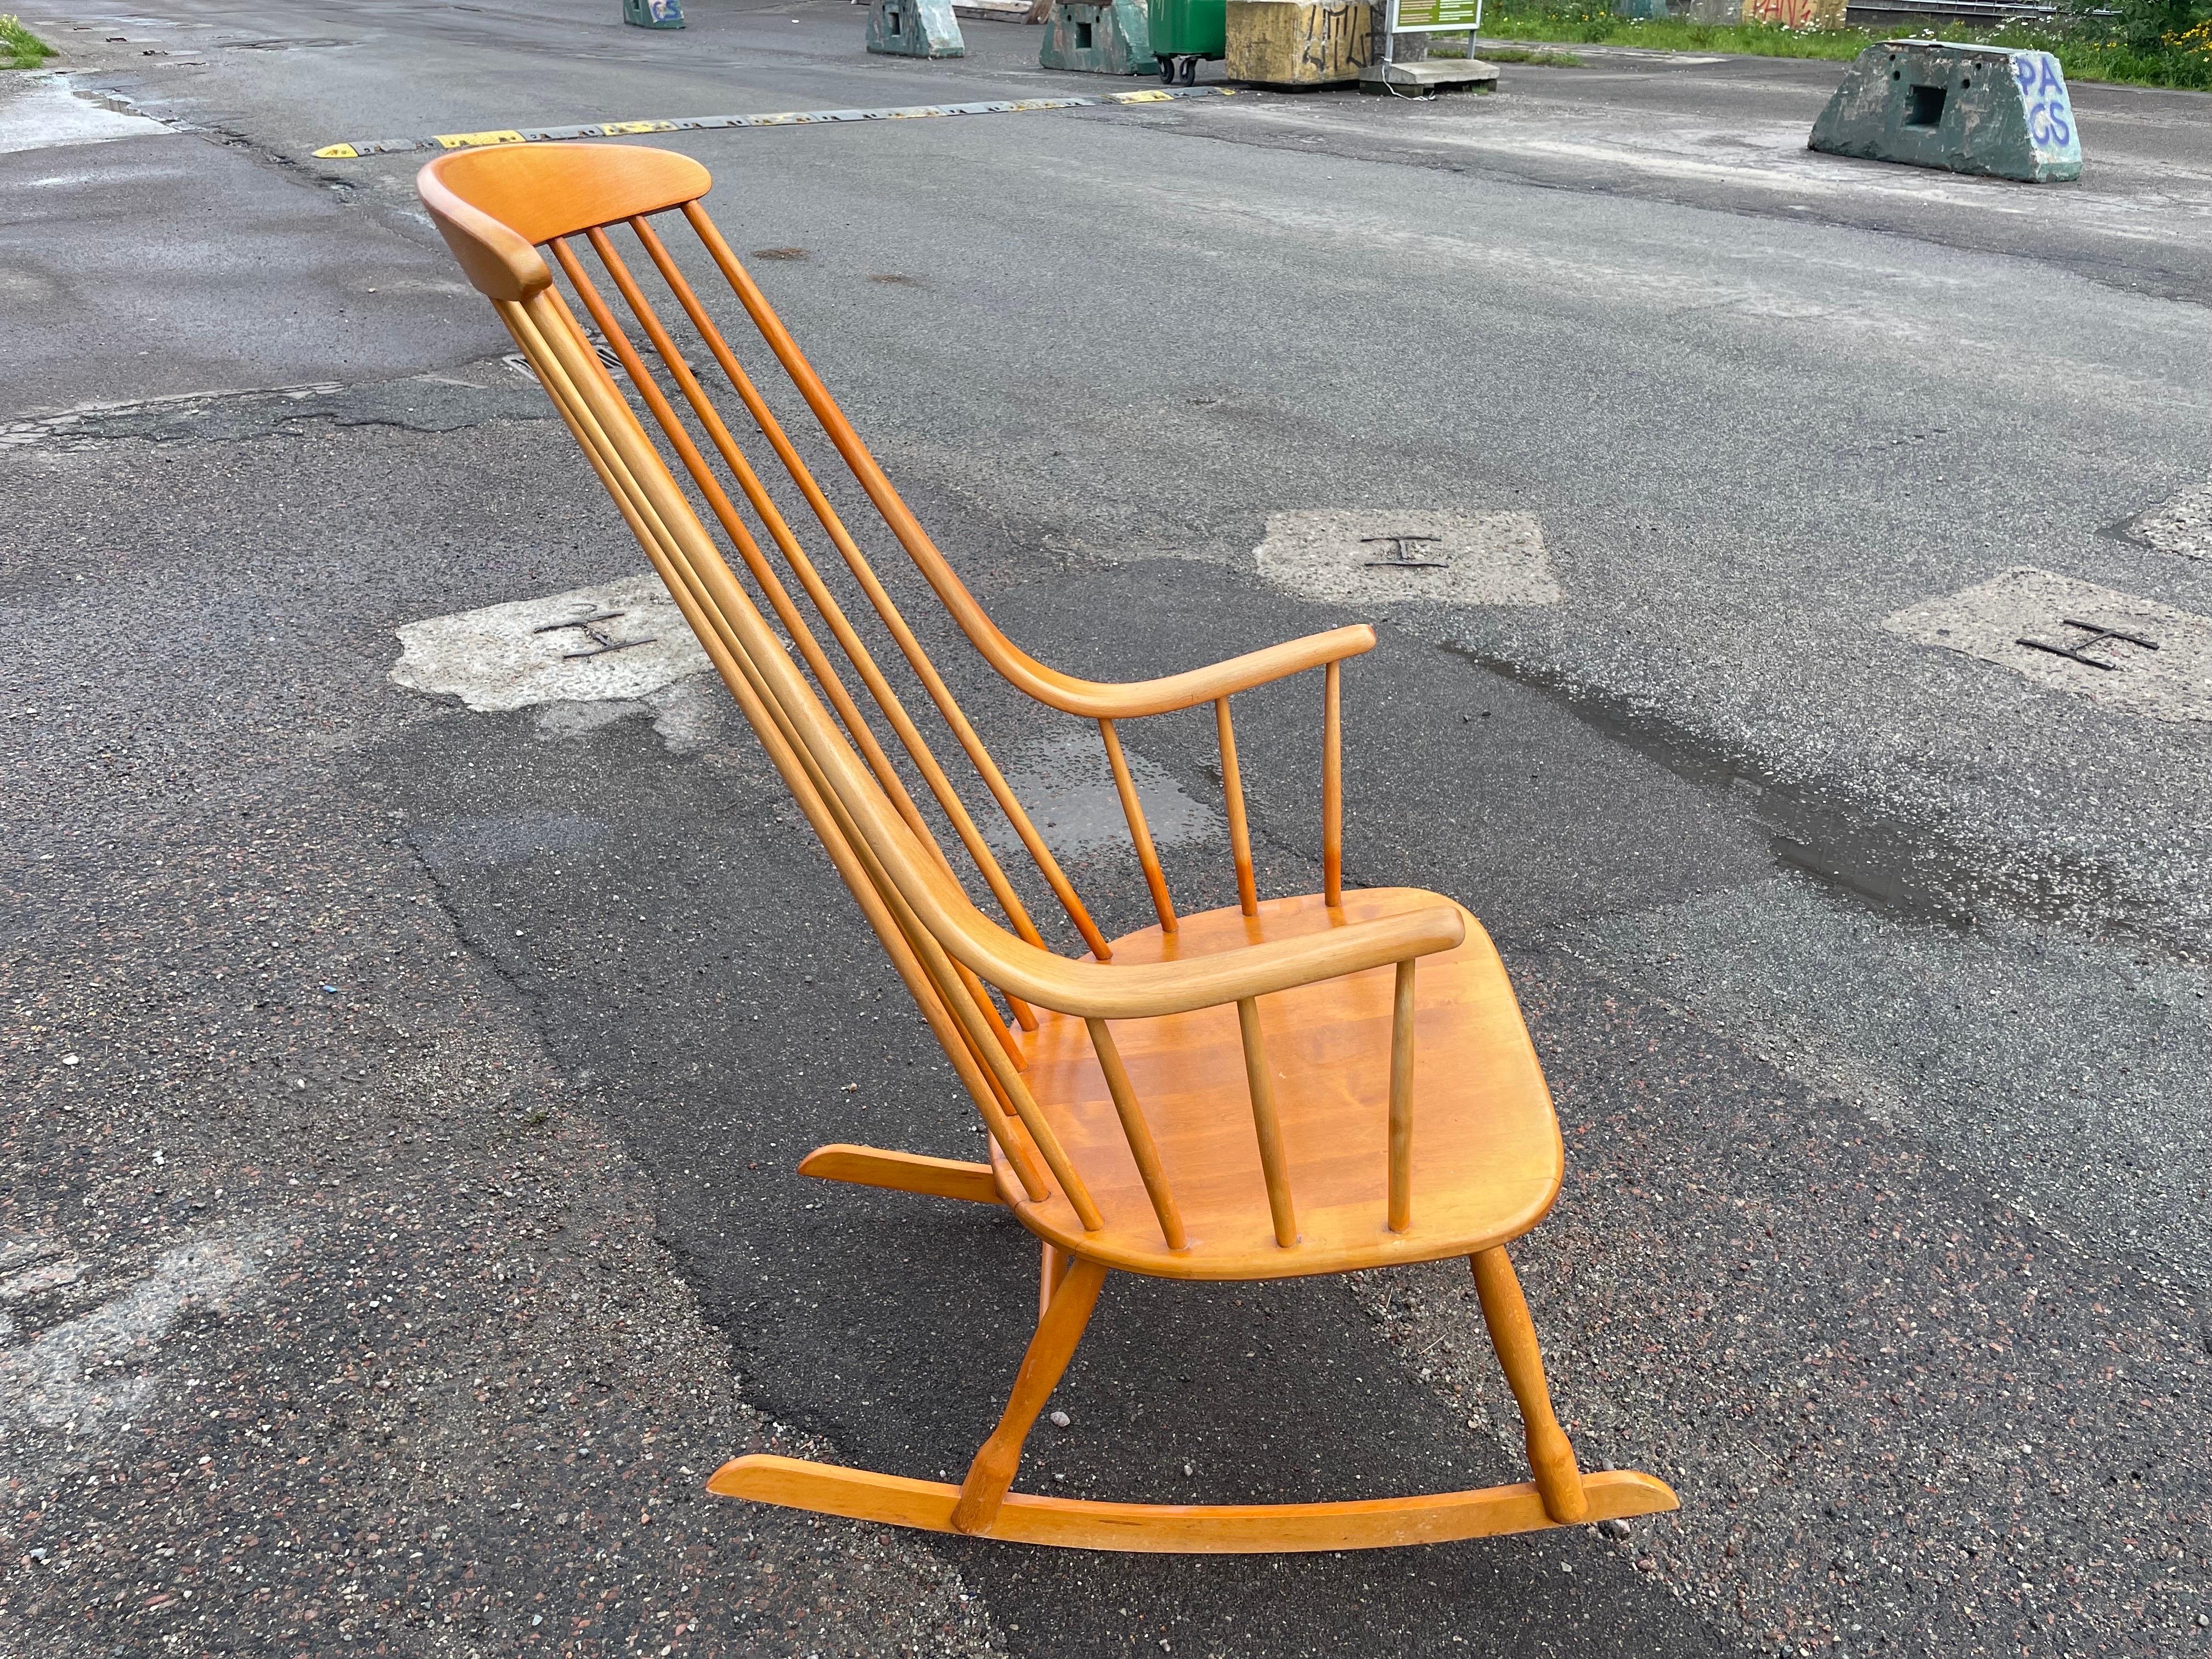 Ce rocking-chair Grandessa a été conçu par Lena Larsson pour la manufacture suédoise Nesto dans les années 1960. Le fauteuil est fabriqué en bois de hêtre.  Le dossier haut se transforme en accoudoirs. La structure est conçue pour assurer un